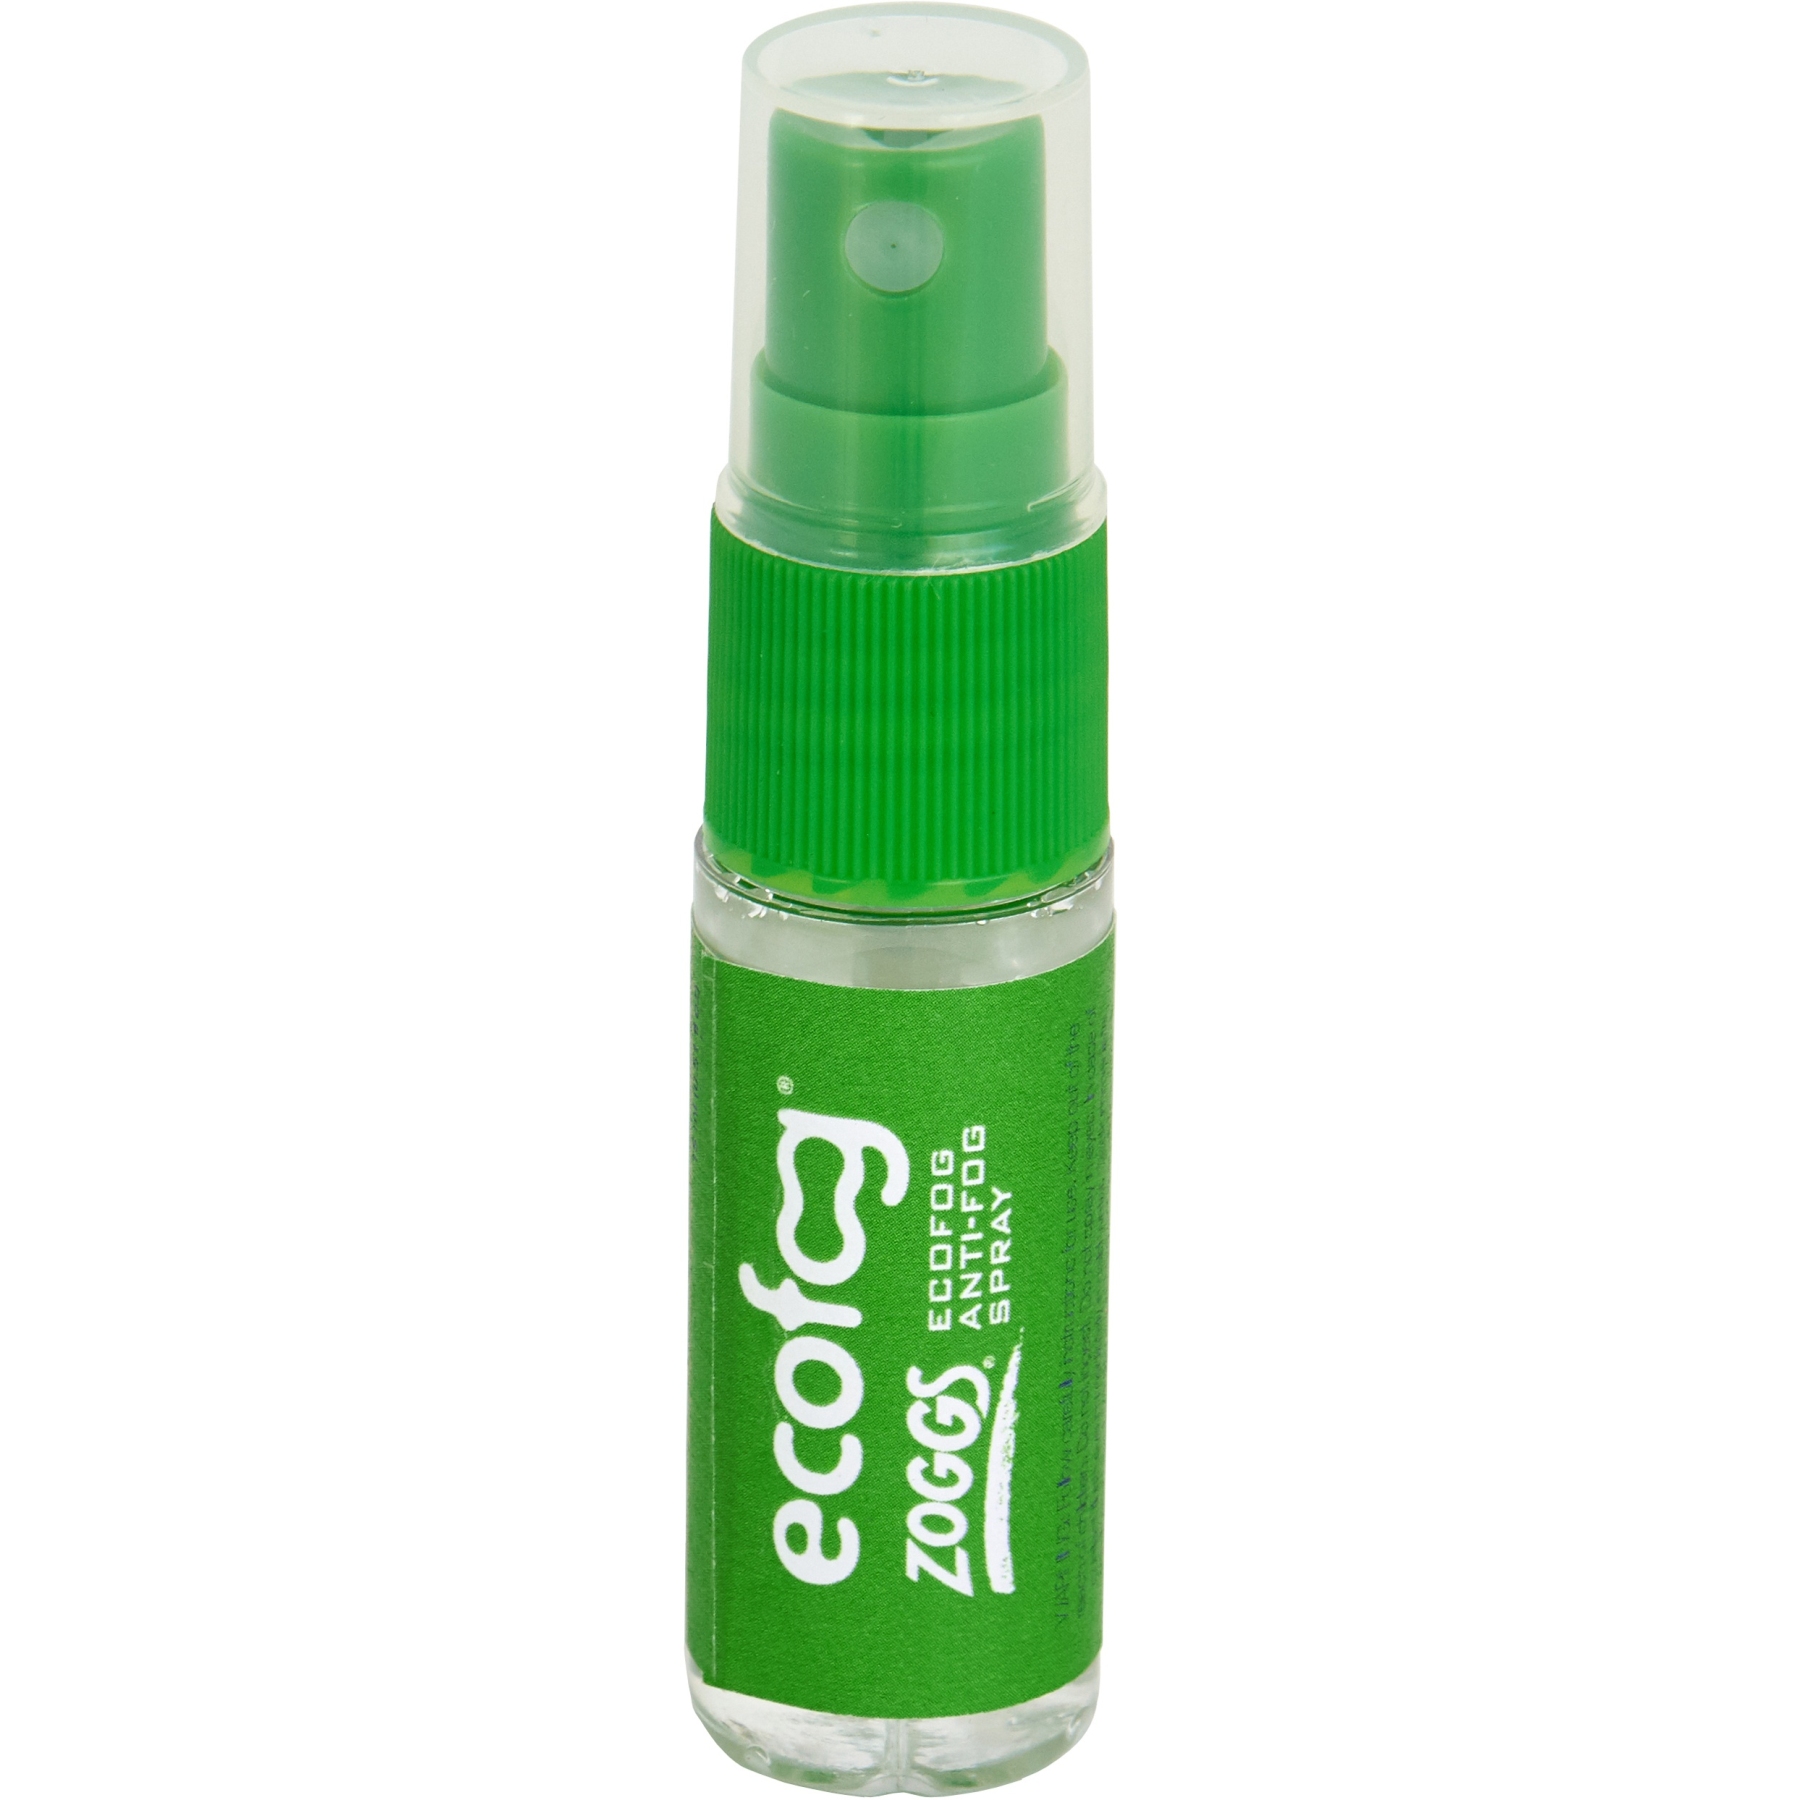 Produktbild von Zoggs ECOFOG Anti-Beschlag-Spray